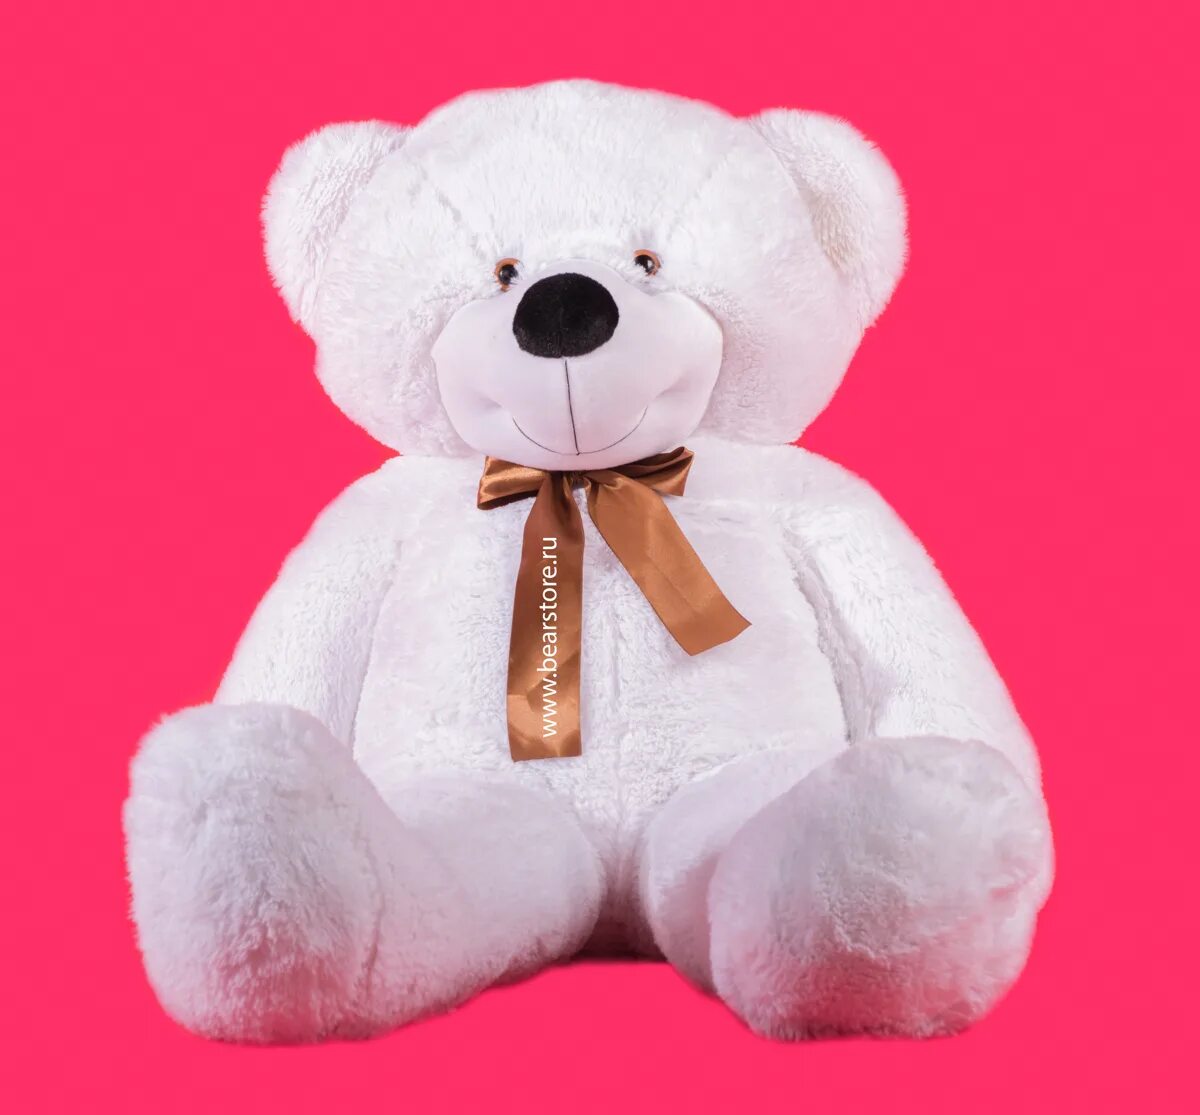 Заказать большого медведя на день рождения. Плюшевый мишка. Плюшевые игрушки. Белый медведь игрушка. Большой медведь игрушка.